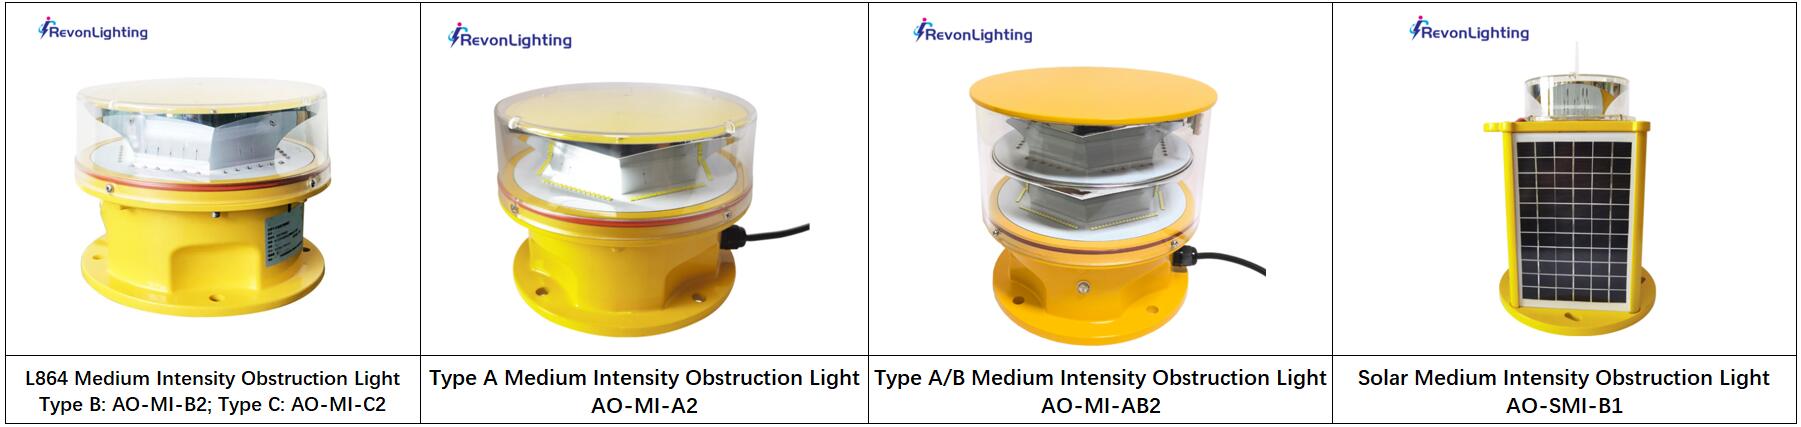 medium intensity obstruction light